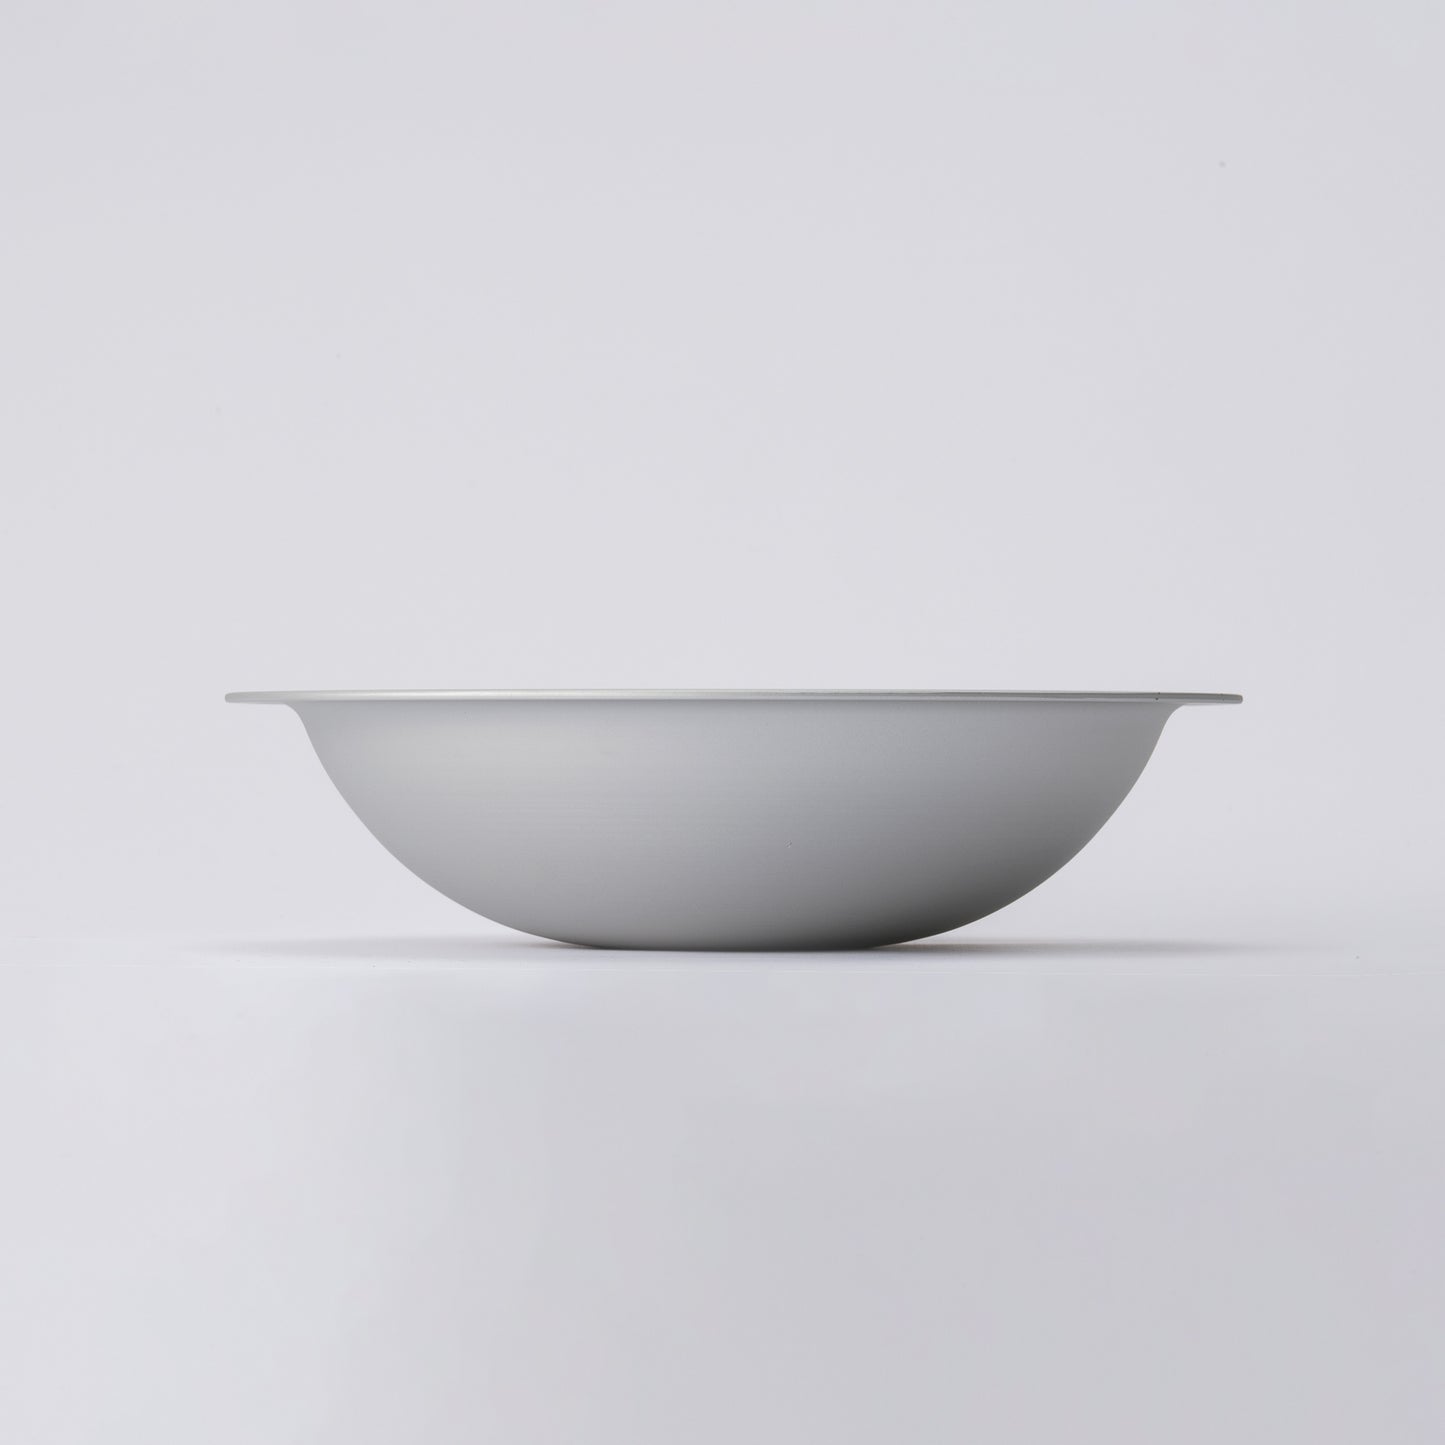 〈Limited〉KAMA-ASA x HEGE Set B (lid, bowl, mat)